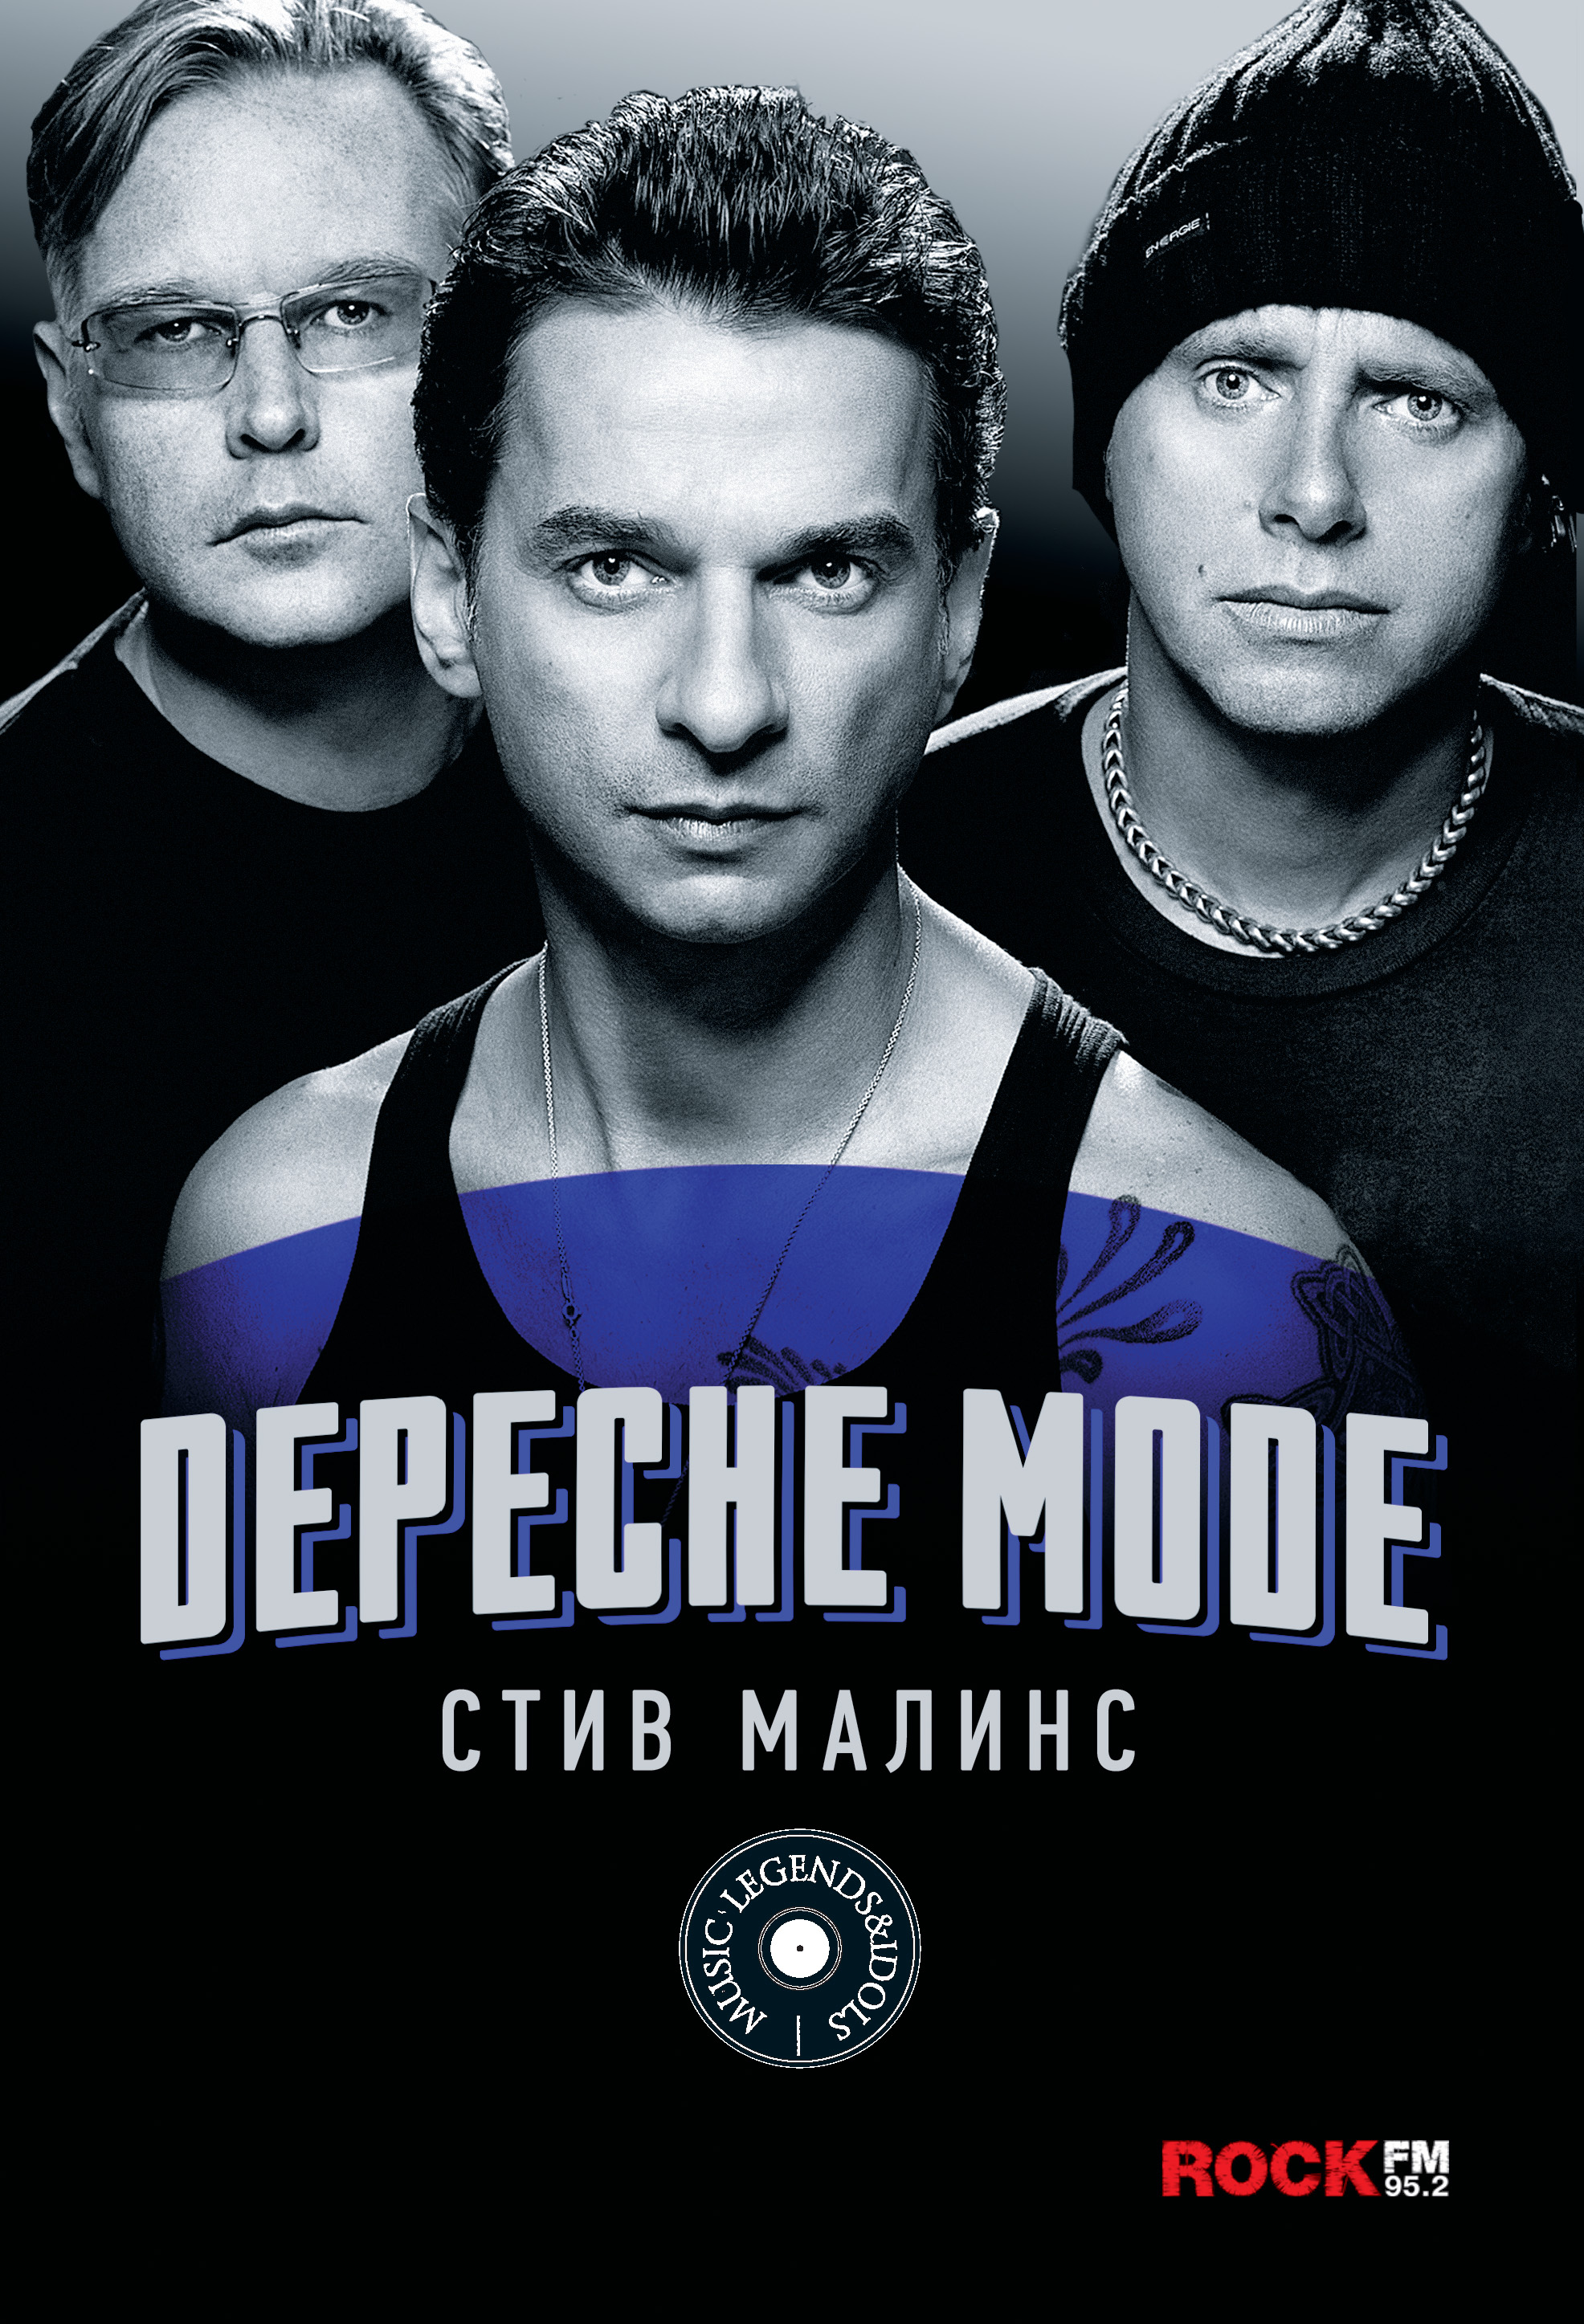 Книга Depeche Mode из серии , созданная Стив Малинс, может относится к жанру Музыка, балет, Зарубежная прикладная и научно-популярная литература, Зарубежная публицистика, Биографии и Мемуары. Стоимость электронной книги Depeche Mode с идентификатором 39284372 составляет 439.00 руб.